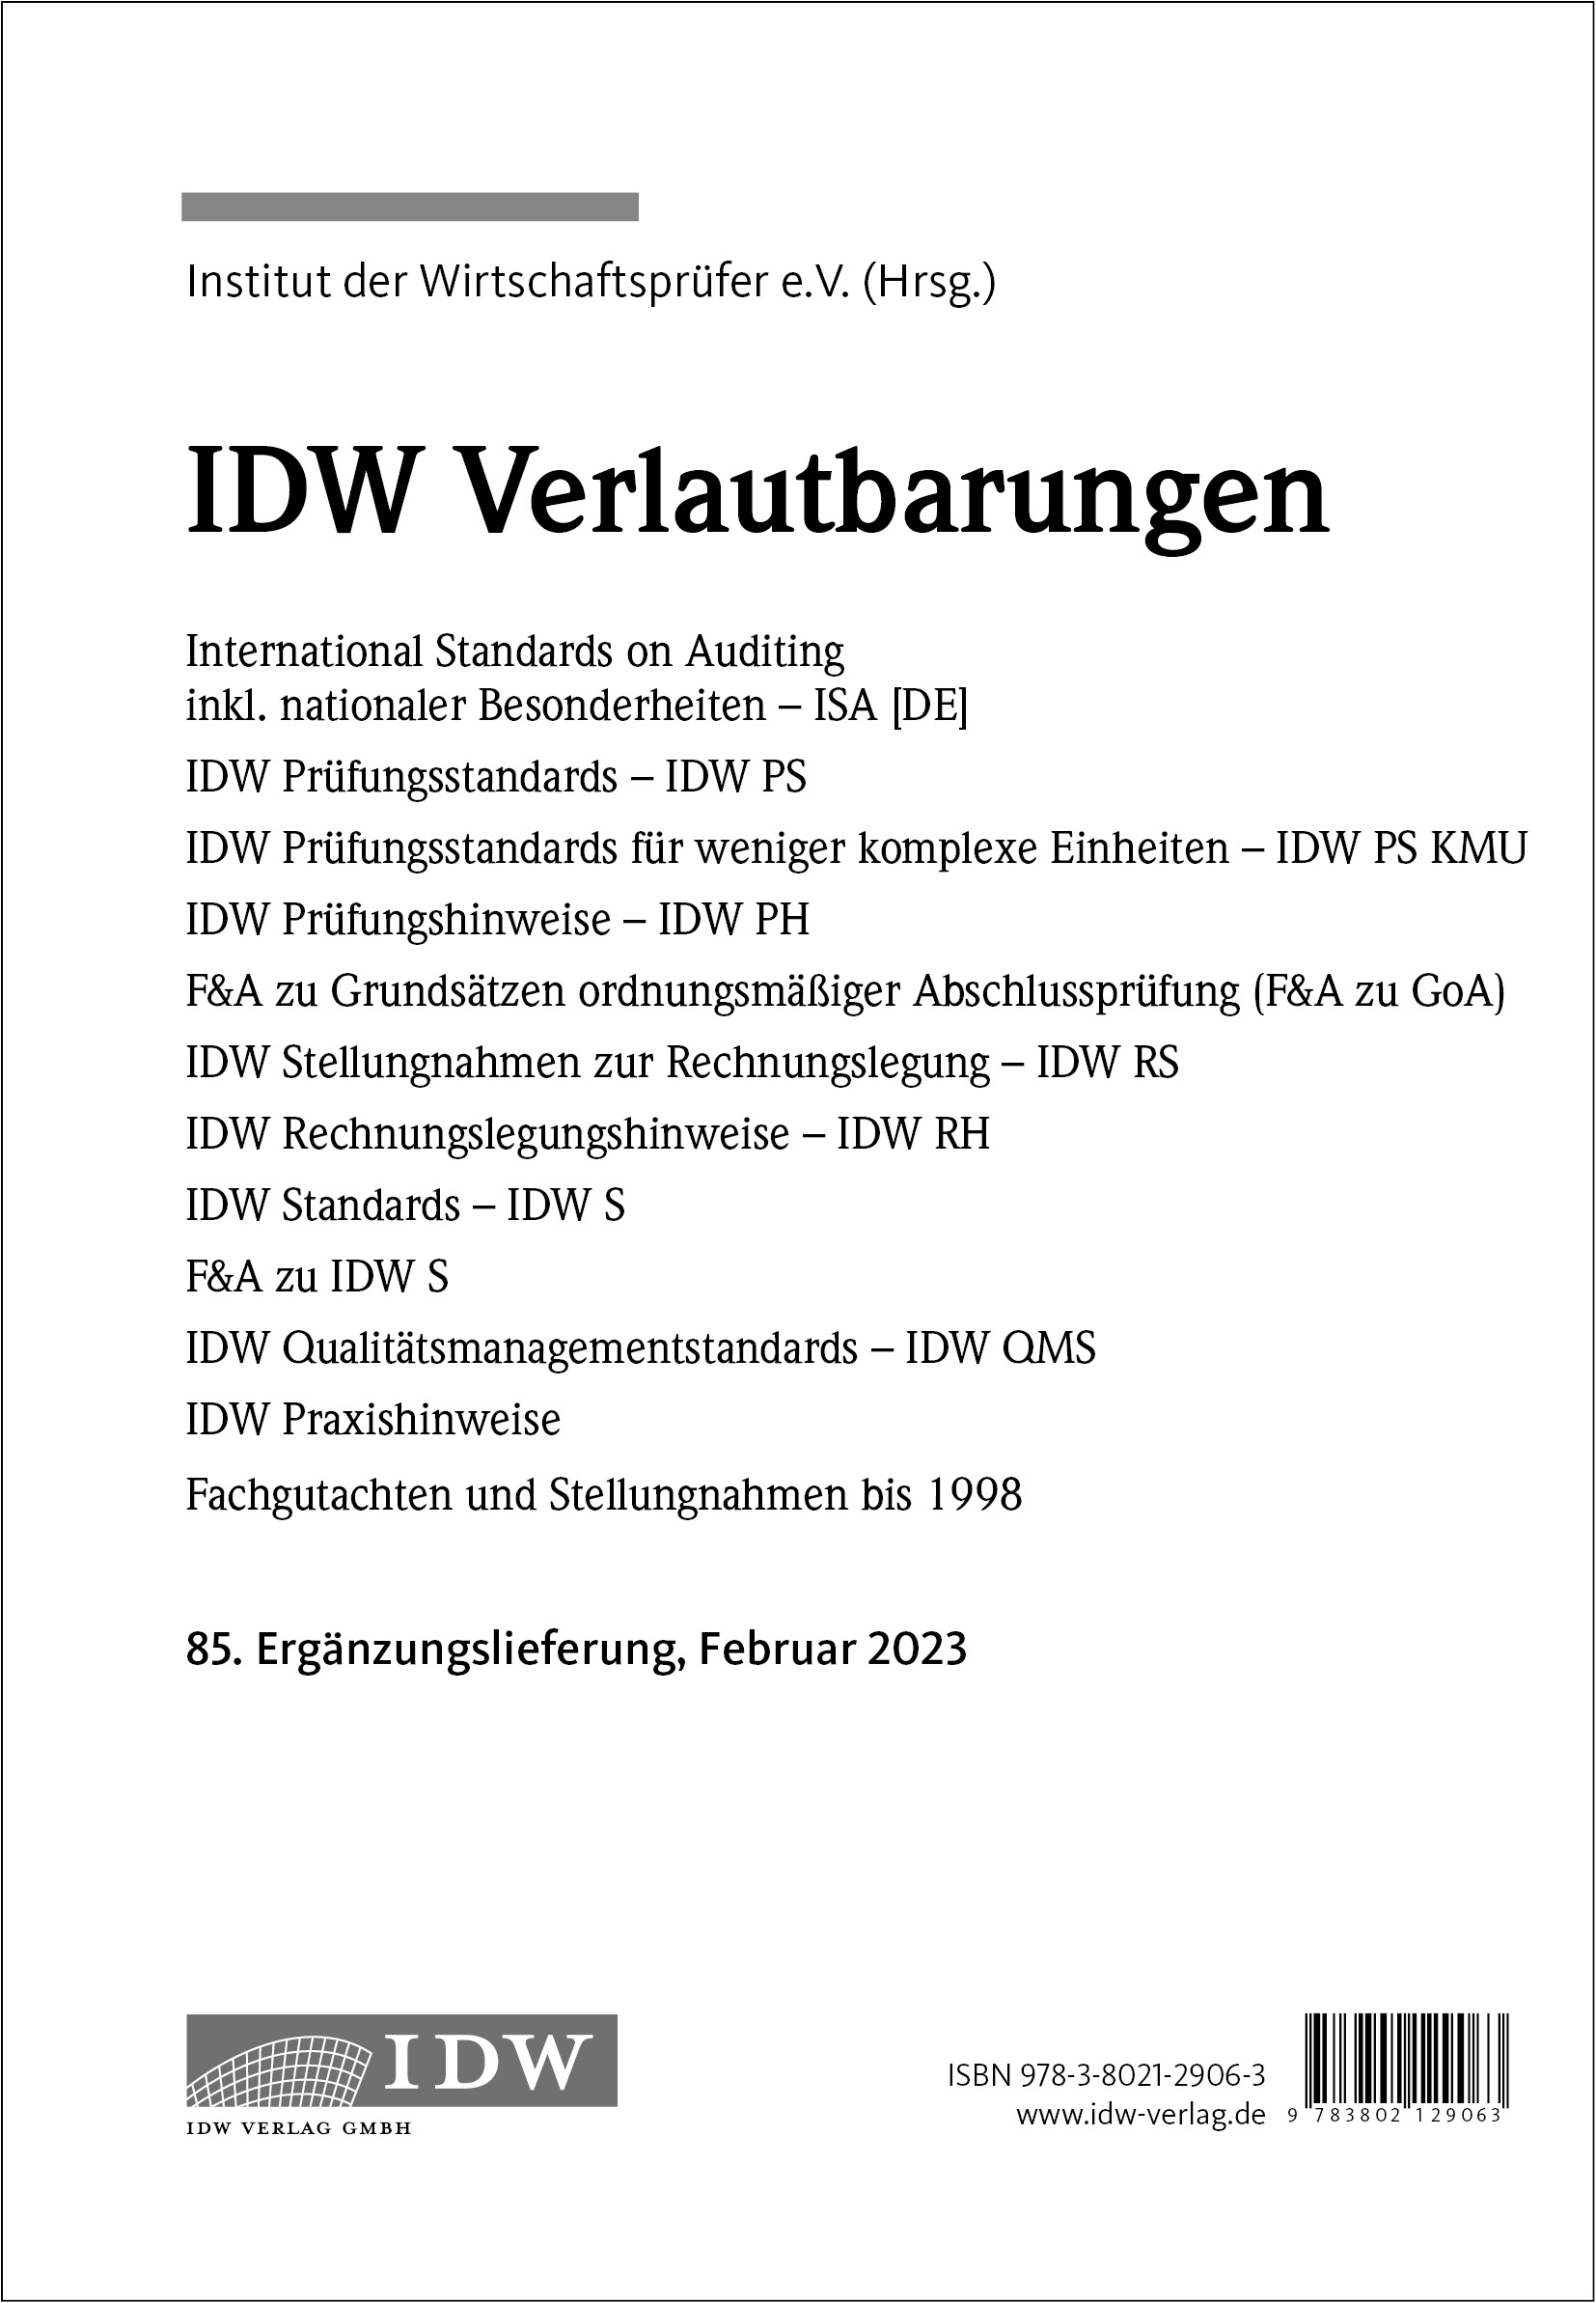 IDW Verlautbarungen - 85. Ergänzungslieferung  